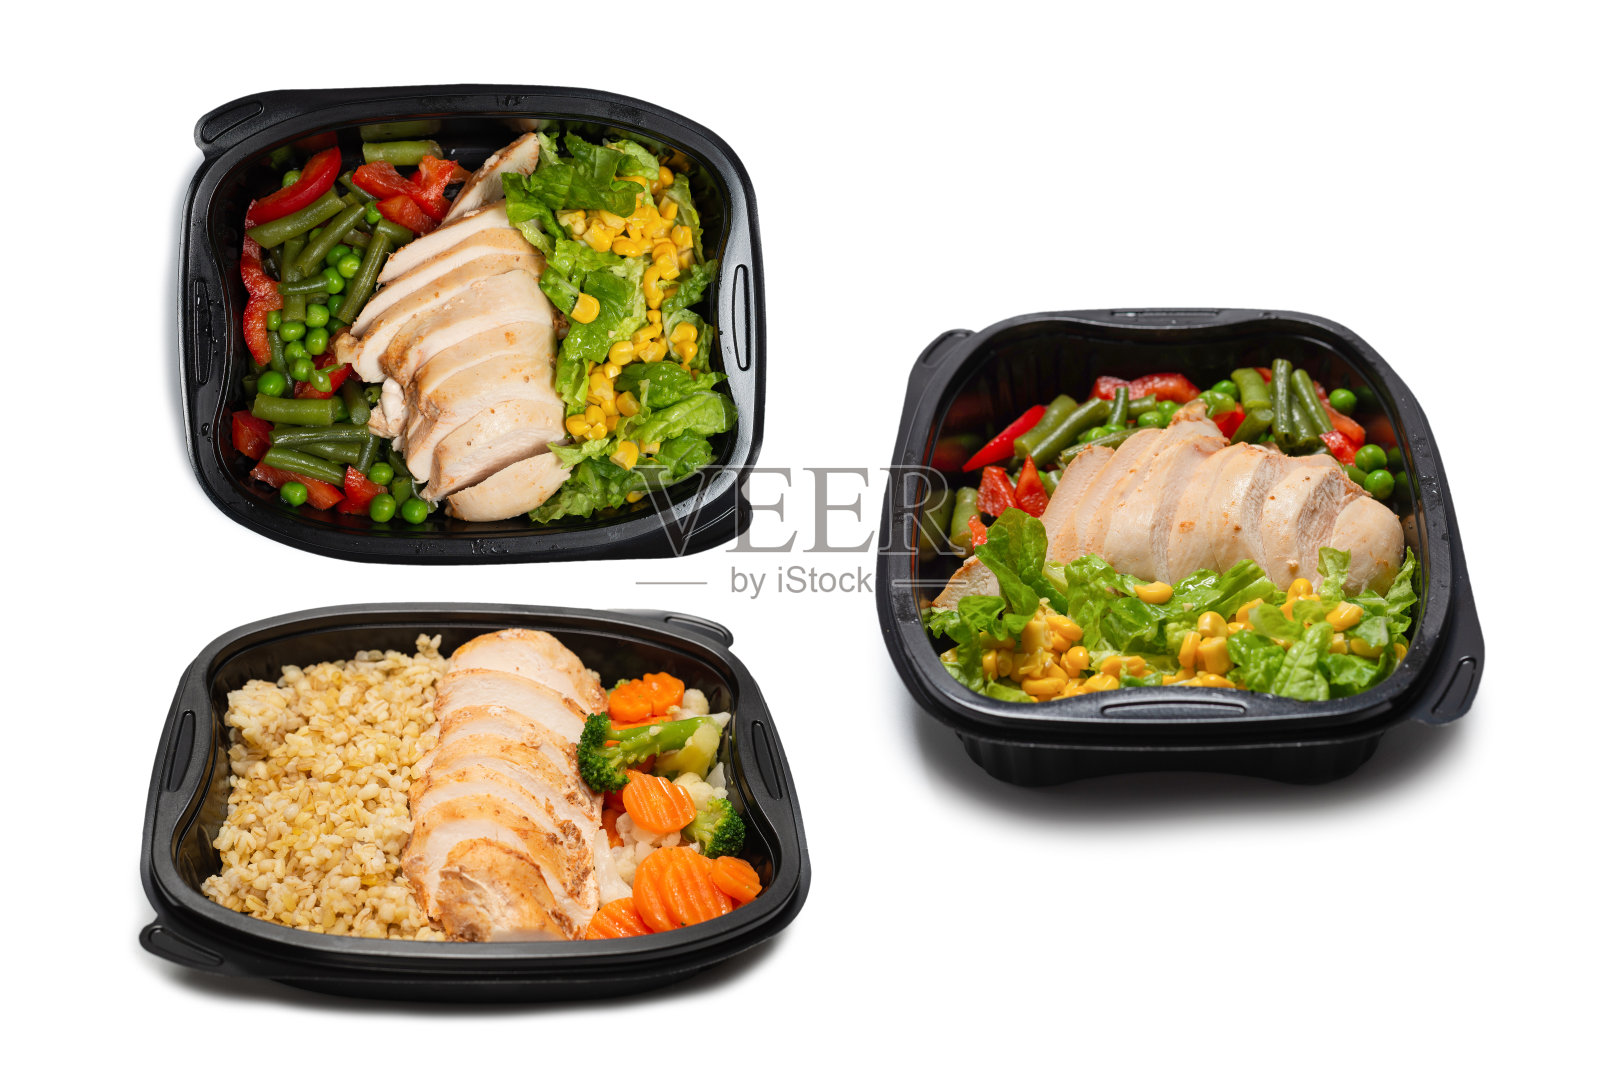 容器中的即食食品。炖鸡，炖蔬菜。照片摄影图片